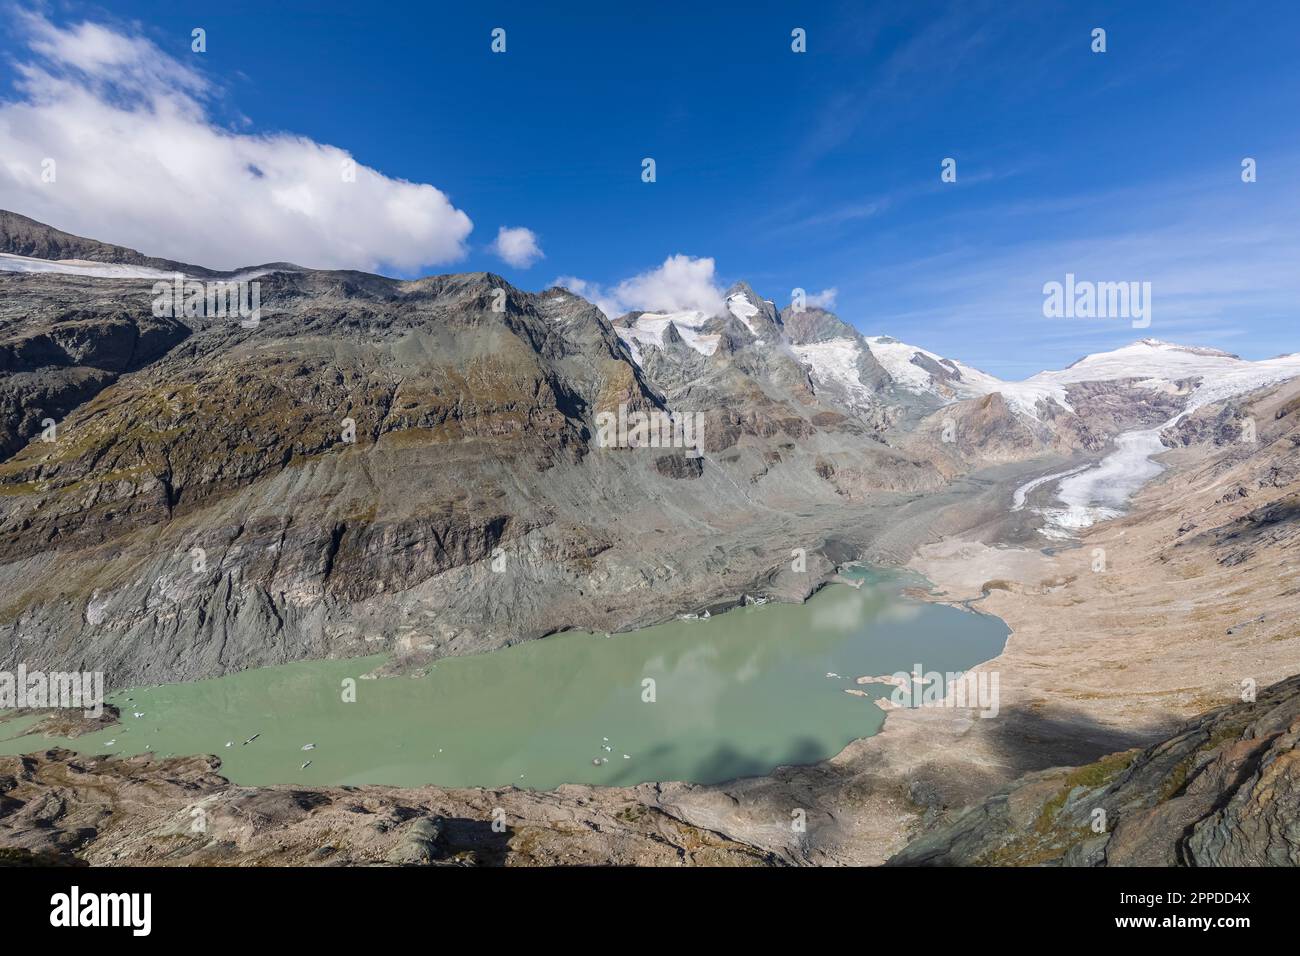 Vista sul ghiacciaio Pasterze e sul lago Sandersee nelle giornate di sole, Carinzia, Austria Foto Stock